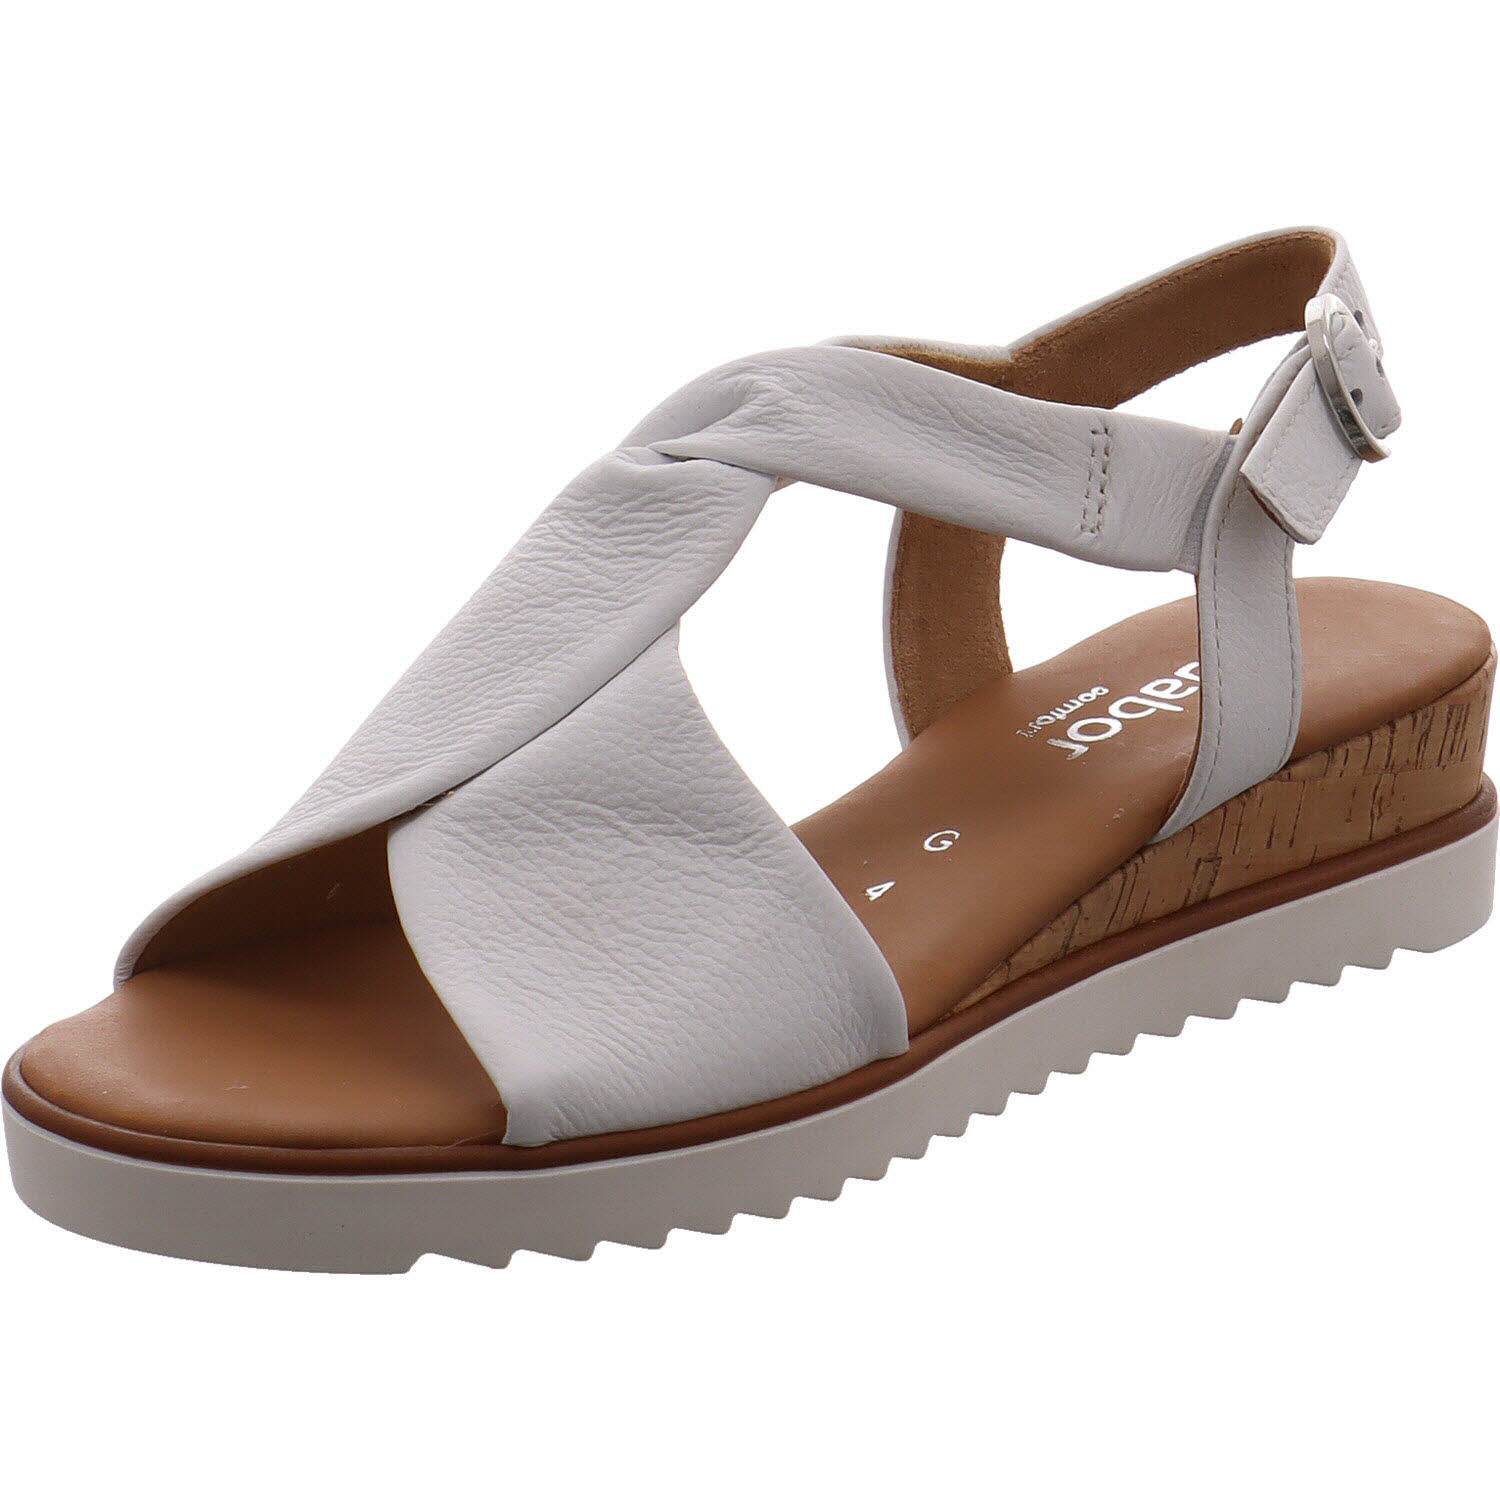 Damen Sandale von Gabor auch in Weiß erhältlich